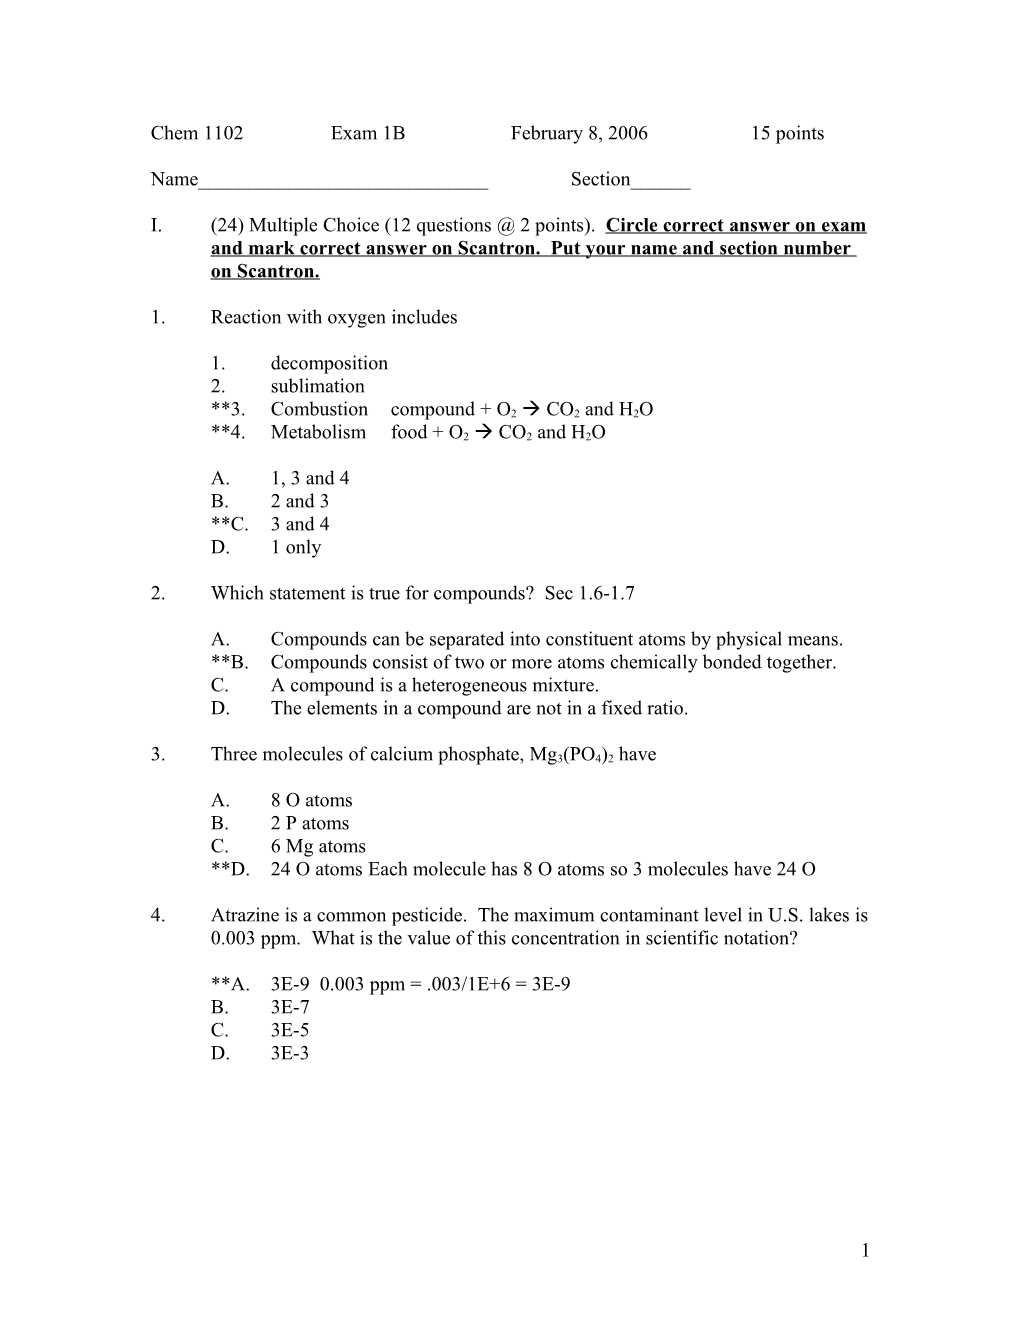 Chem 1102 Exam 1B February 8, 2006 15 Points